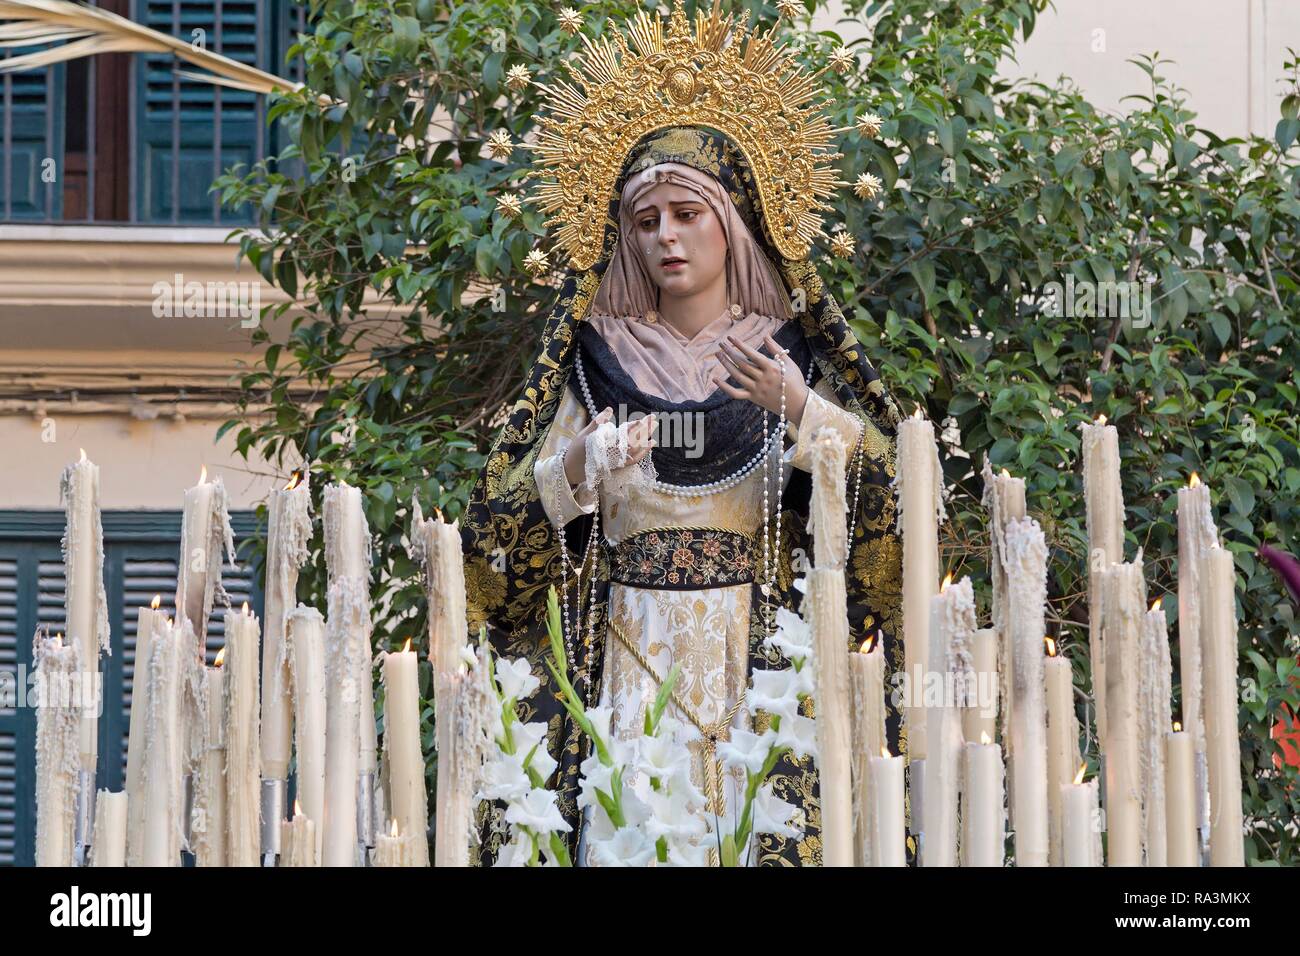 Statue of the Virgin Mary at a Good Friday procession, Semana Santa, Palma de Majorca, Majorca, Spain Stock Photo